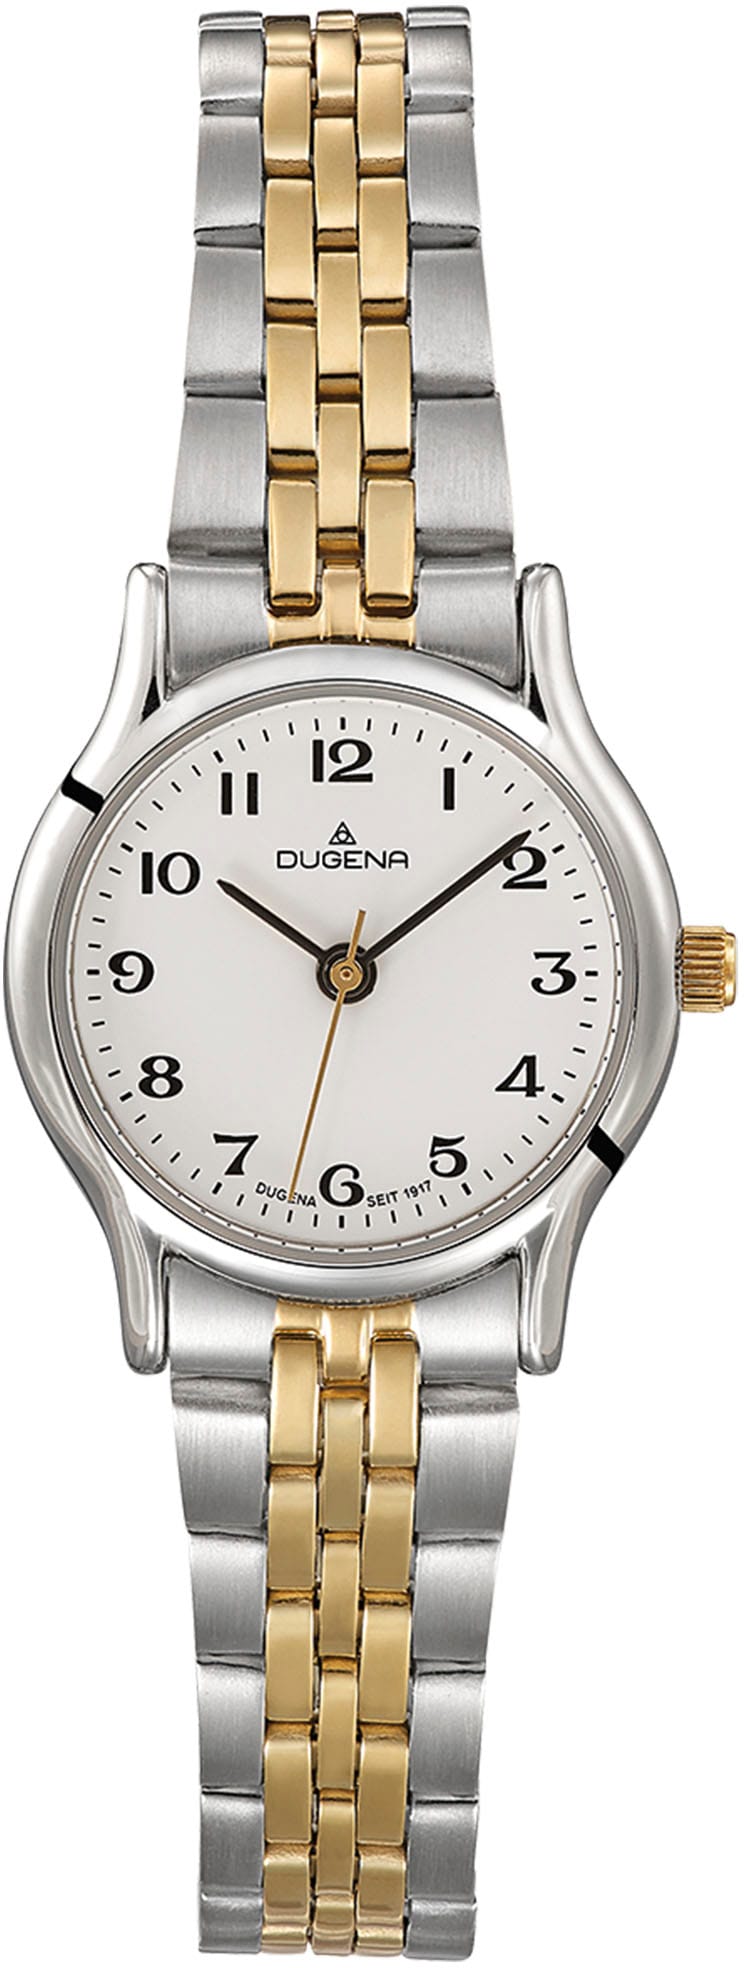 Dugena Online-Shop | Dugena BAUR kaufen » Uhren